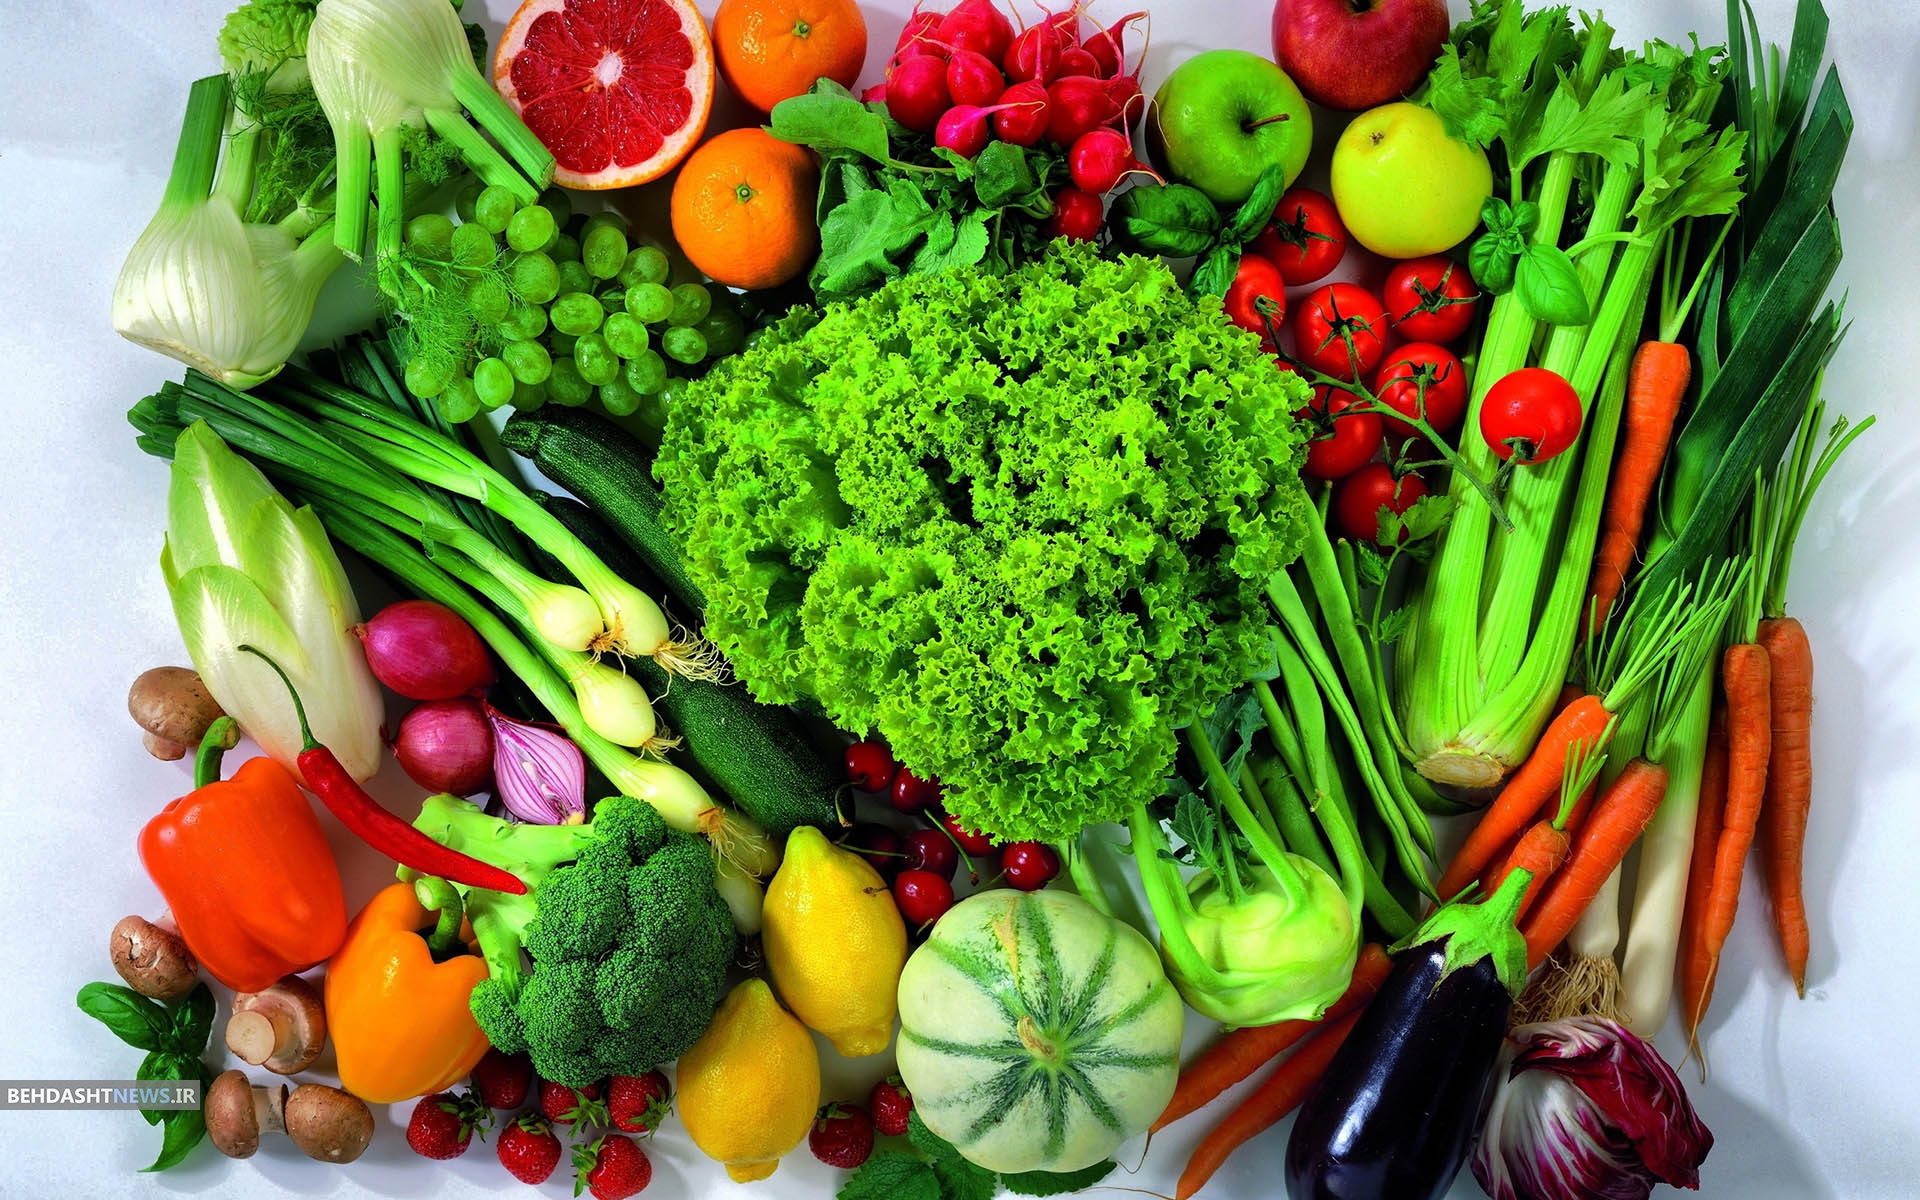  انواع سبزیجاتی که باید کمتر مصرف کنید